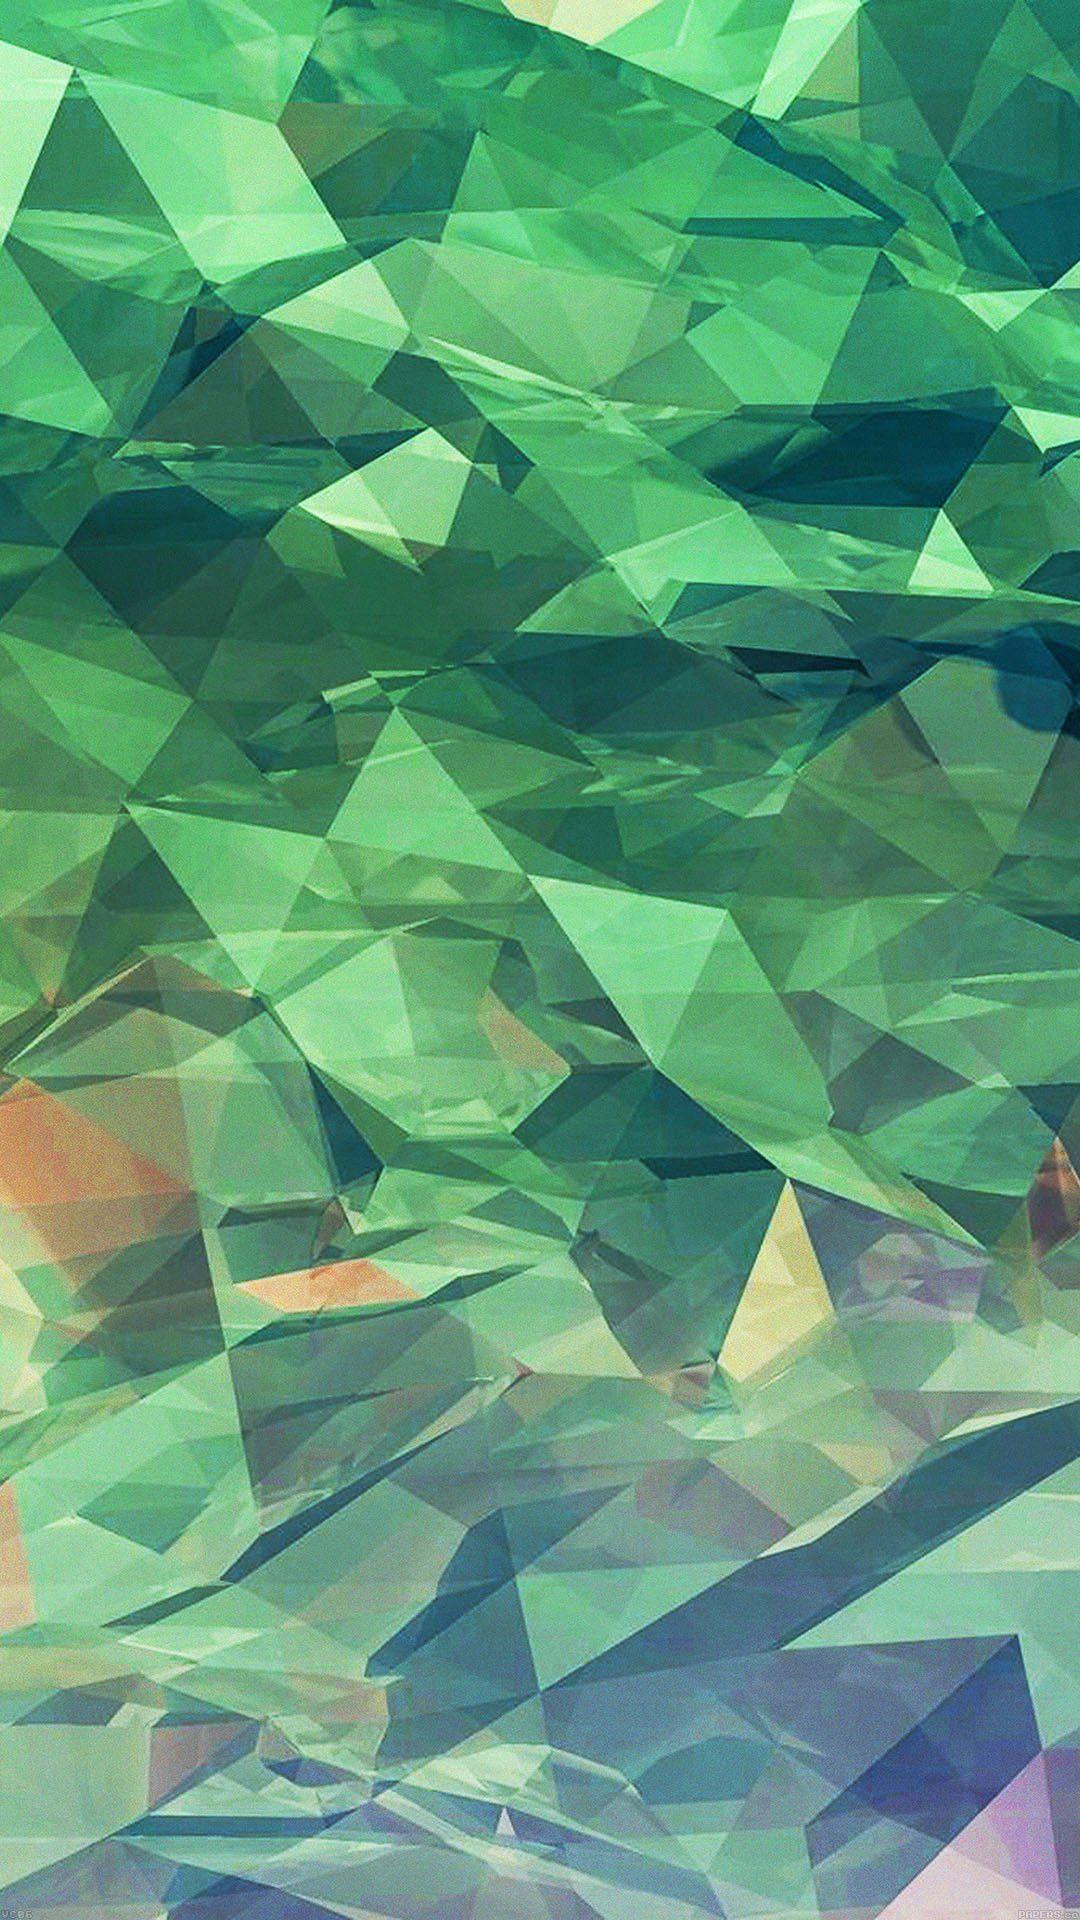 1080x1920 iPhone7papers - màu xanh lá cây đại dương trong nghệ thuật đường nét nghệ thuật